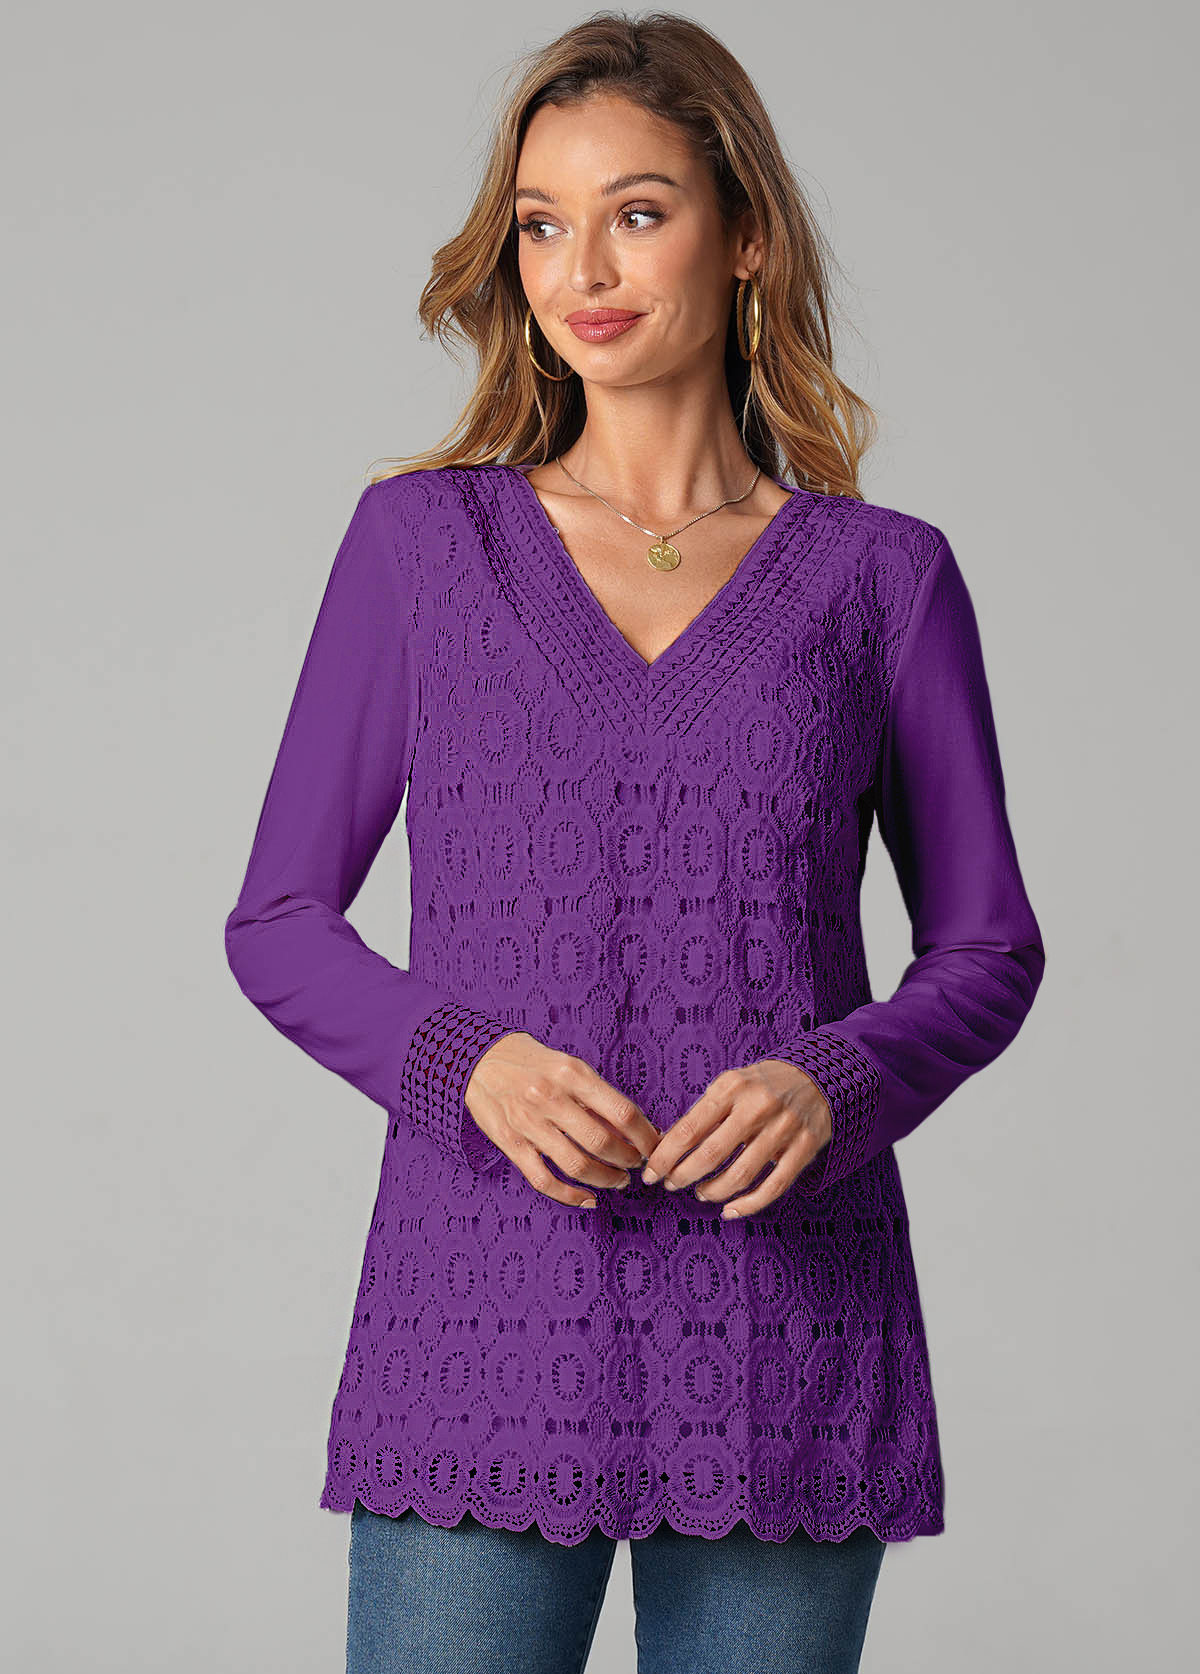 Lace Stitching Long Sleeve Purple T Shirt